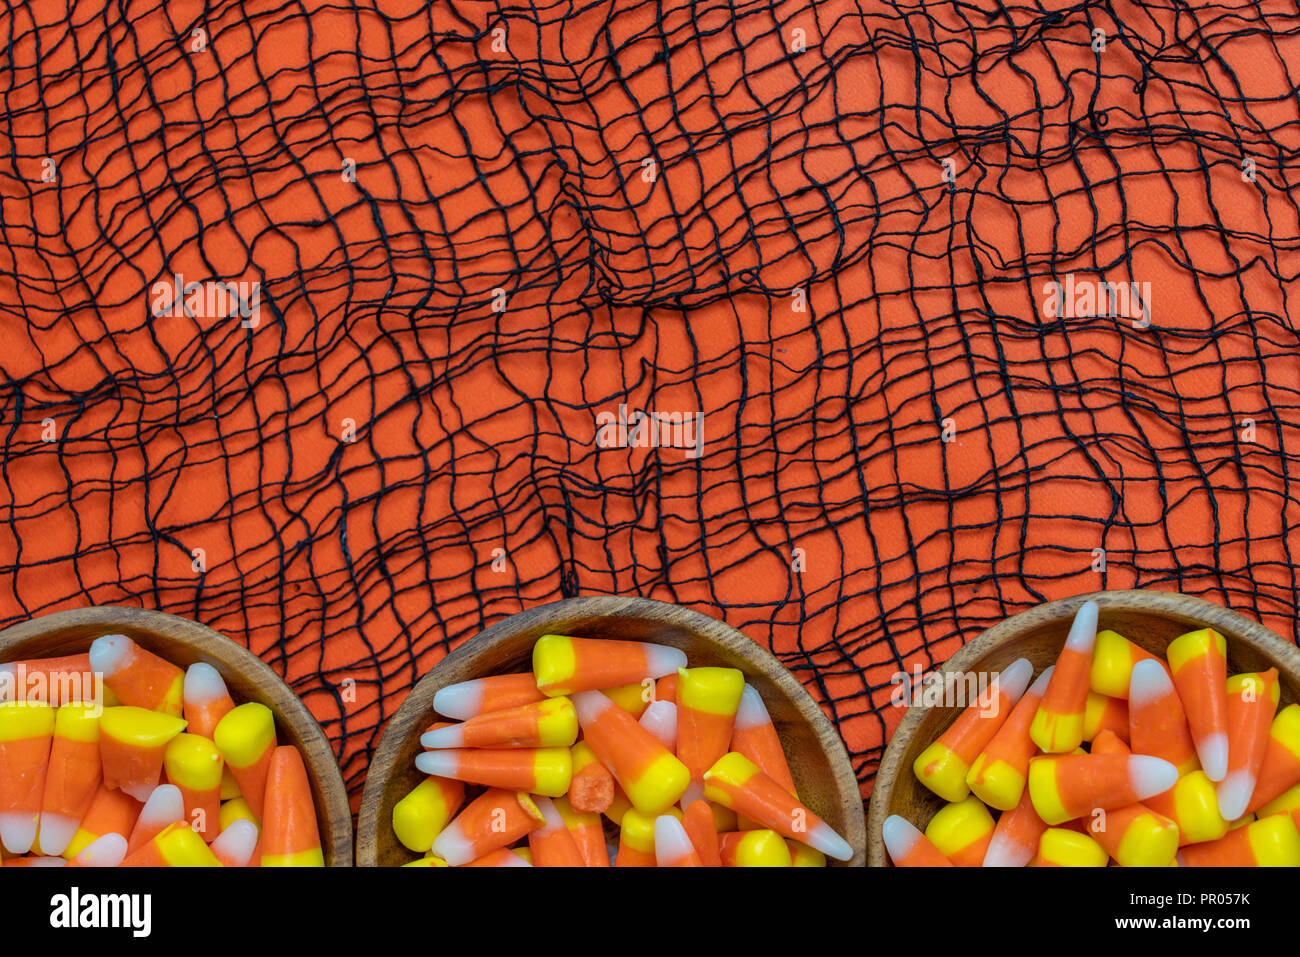 Cereali caramellati confine con webby tessuto nero su uno sfondo arancione Foto Stock